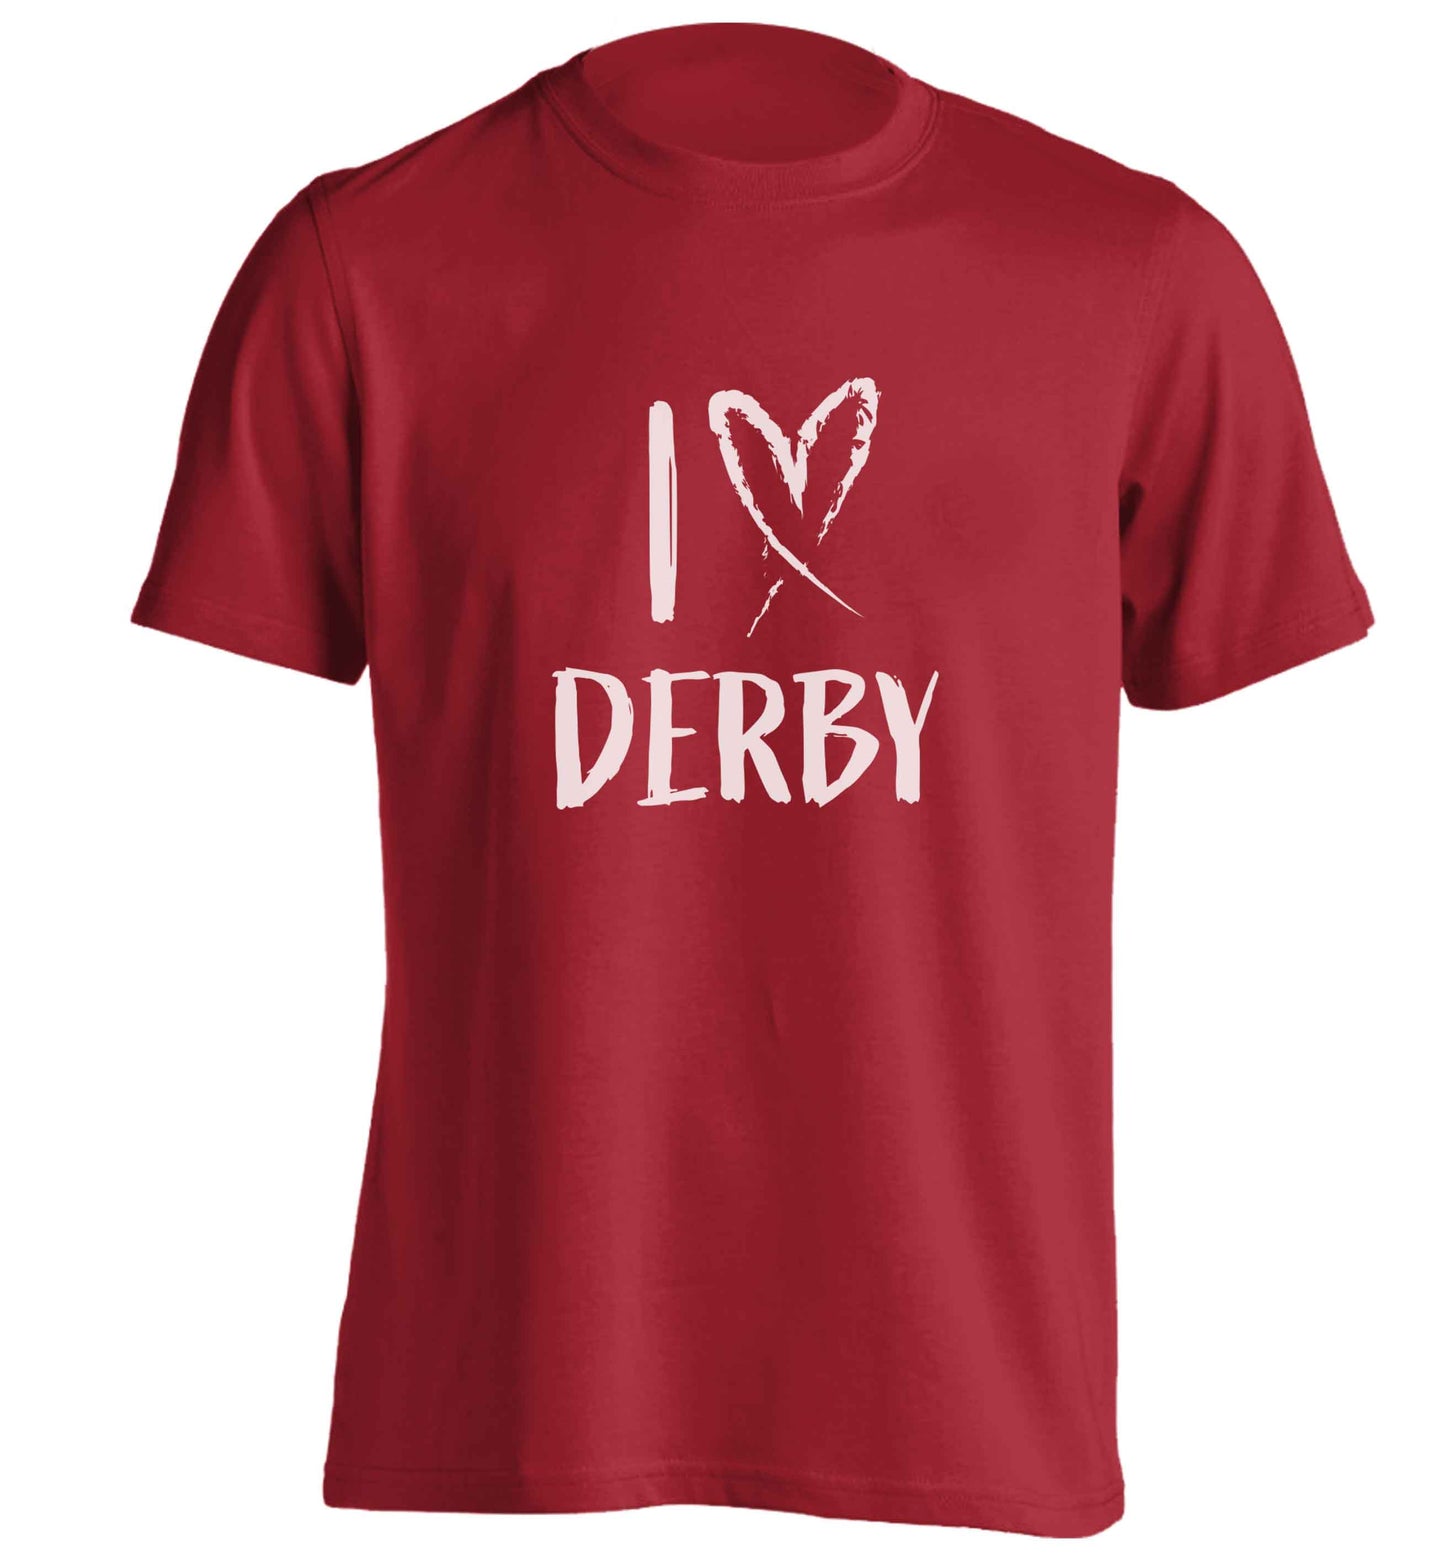 I love Derby adults unisex red Tshirt 2XL